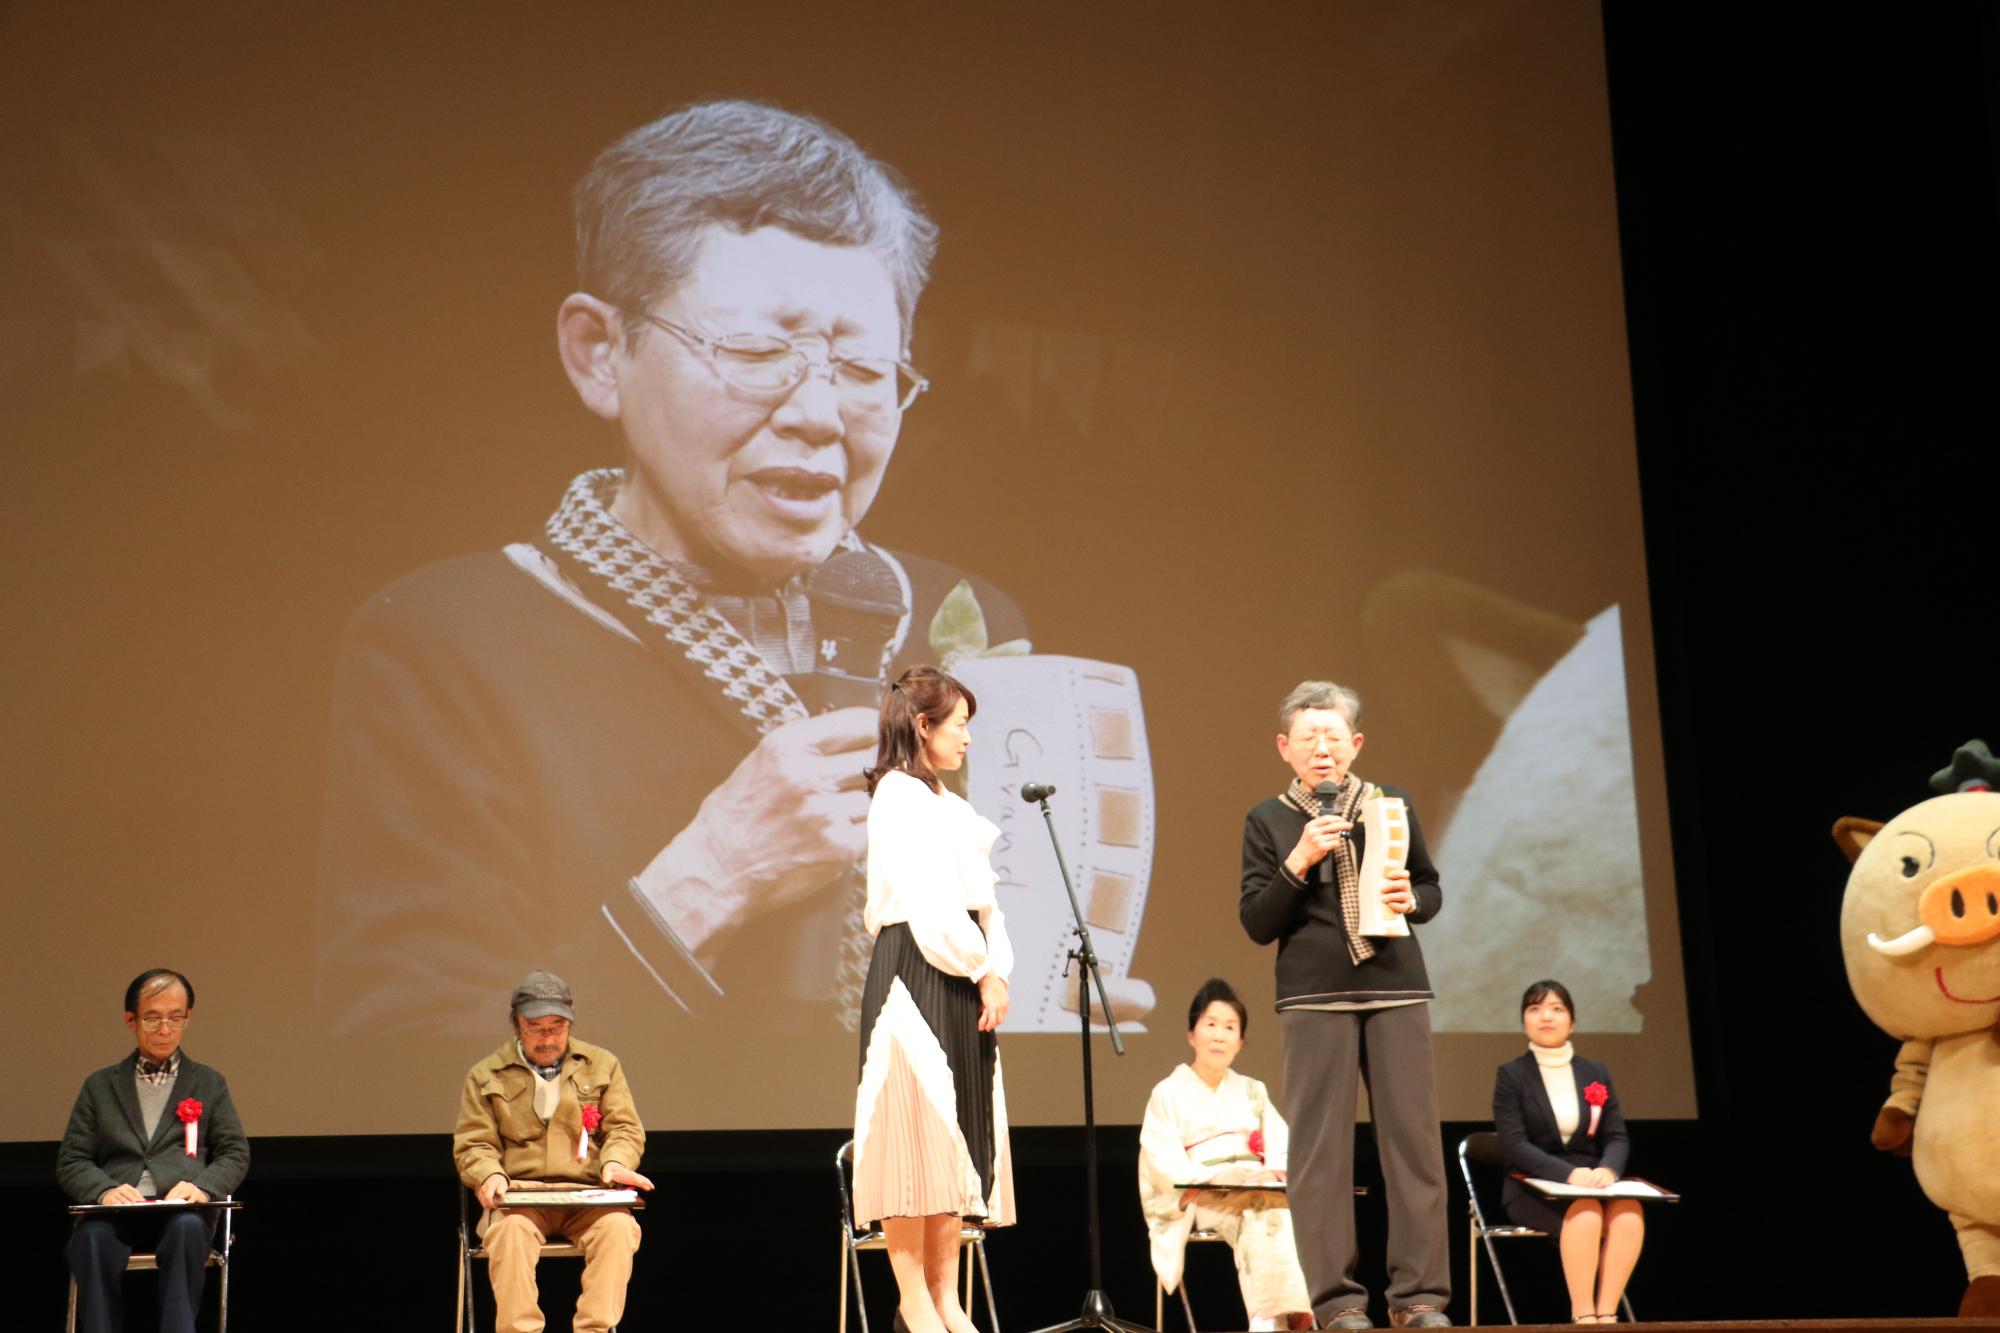 大賞の阪下さんがマイクを持って話されている姿がスクリーンに大きく映し出され、その話をきく熊谷奈美さんと他の受賞者の方々の写真